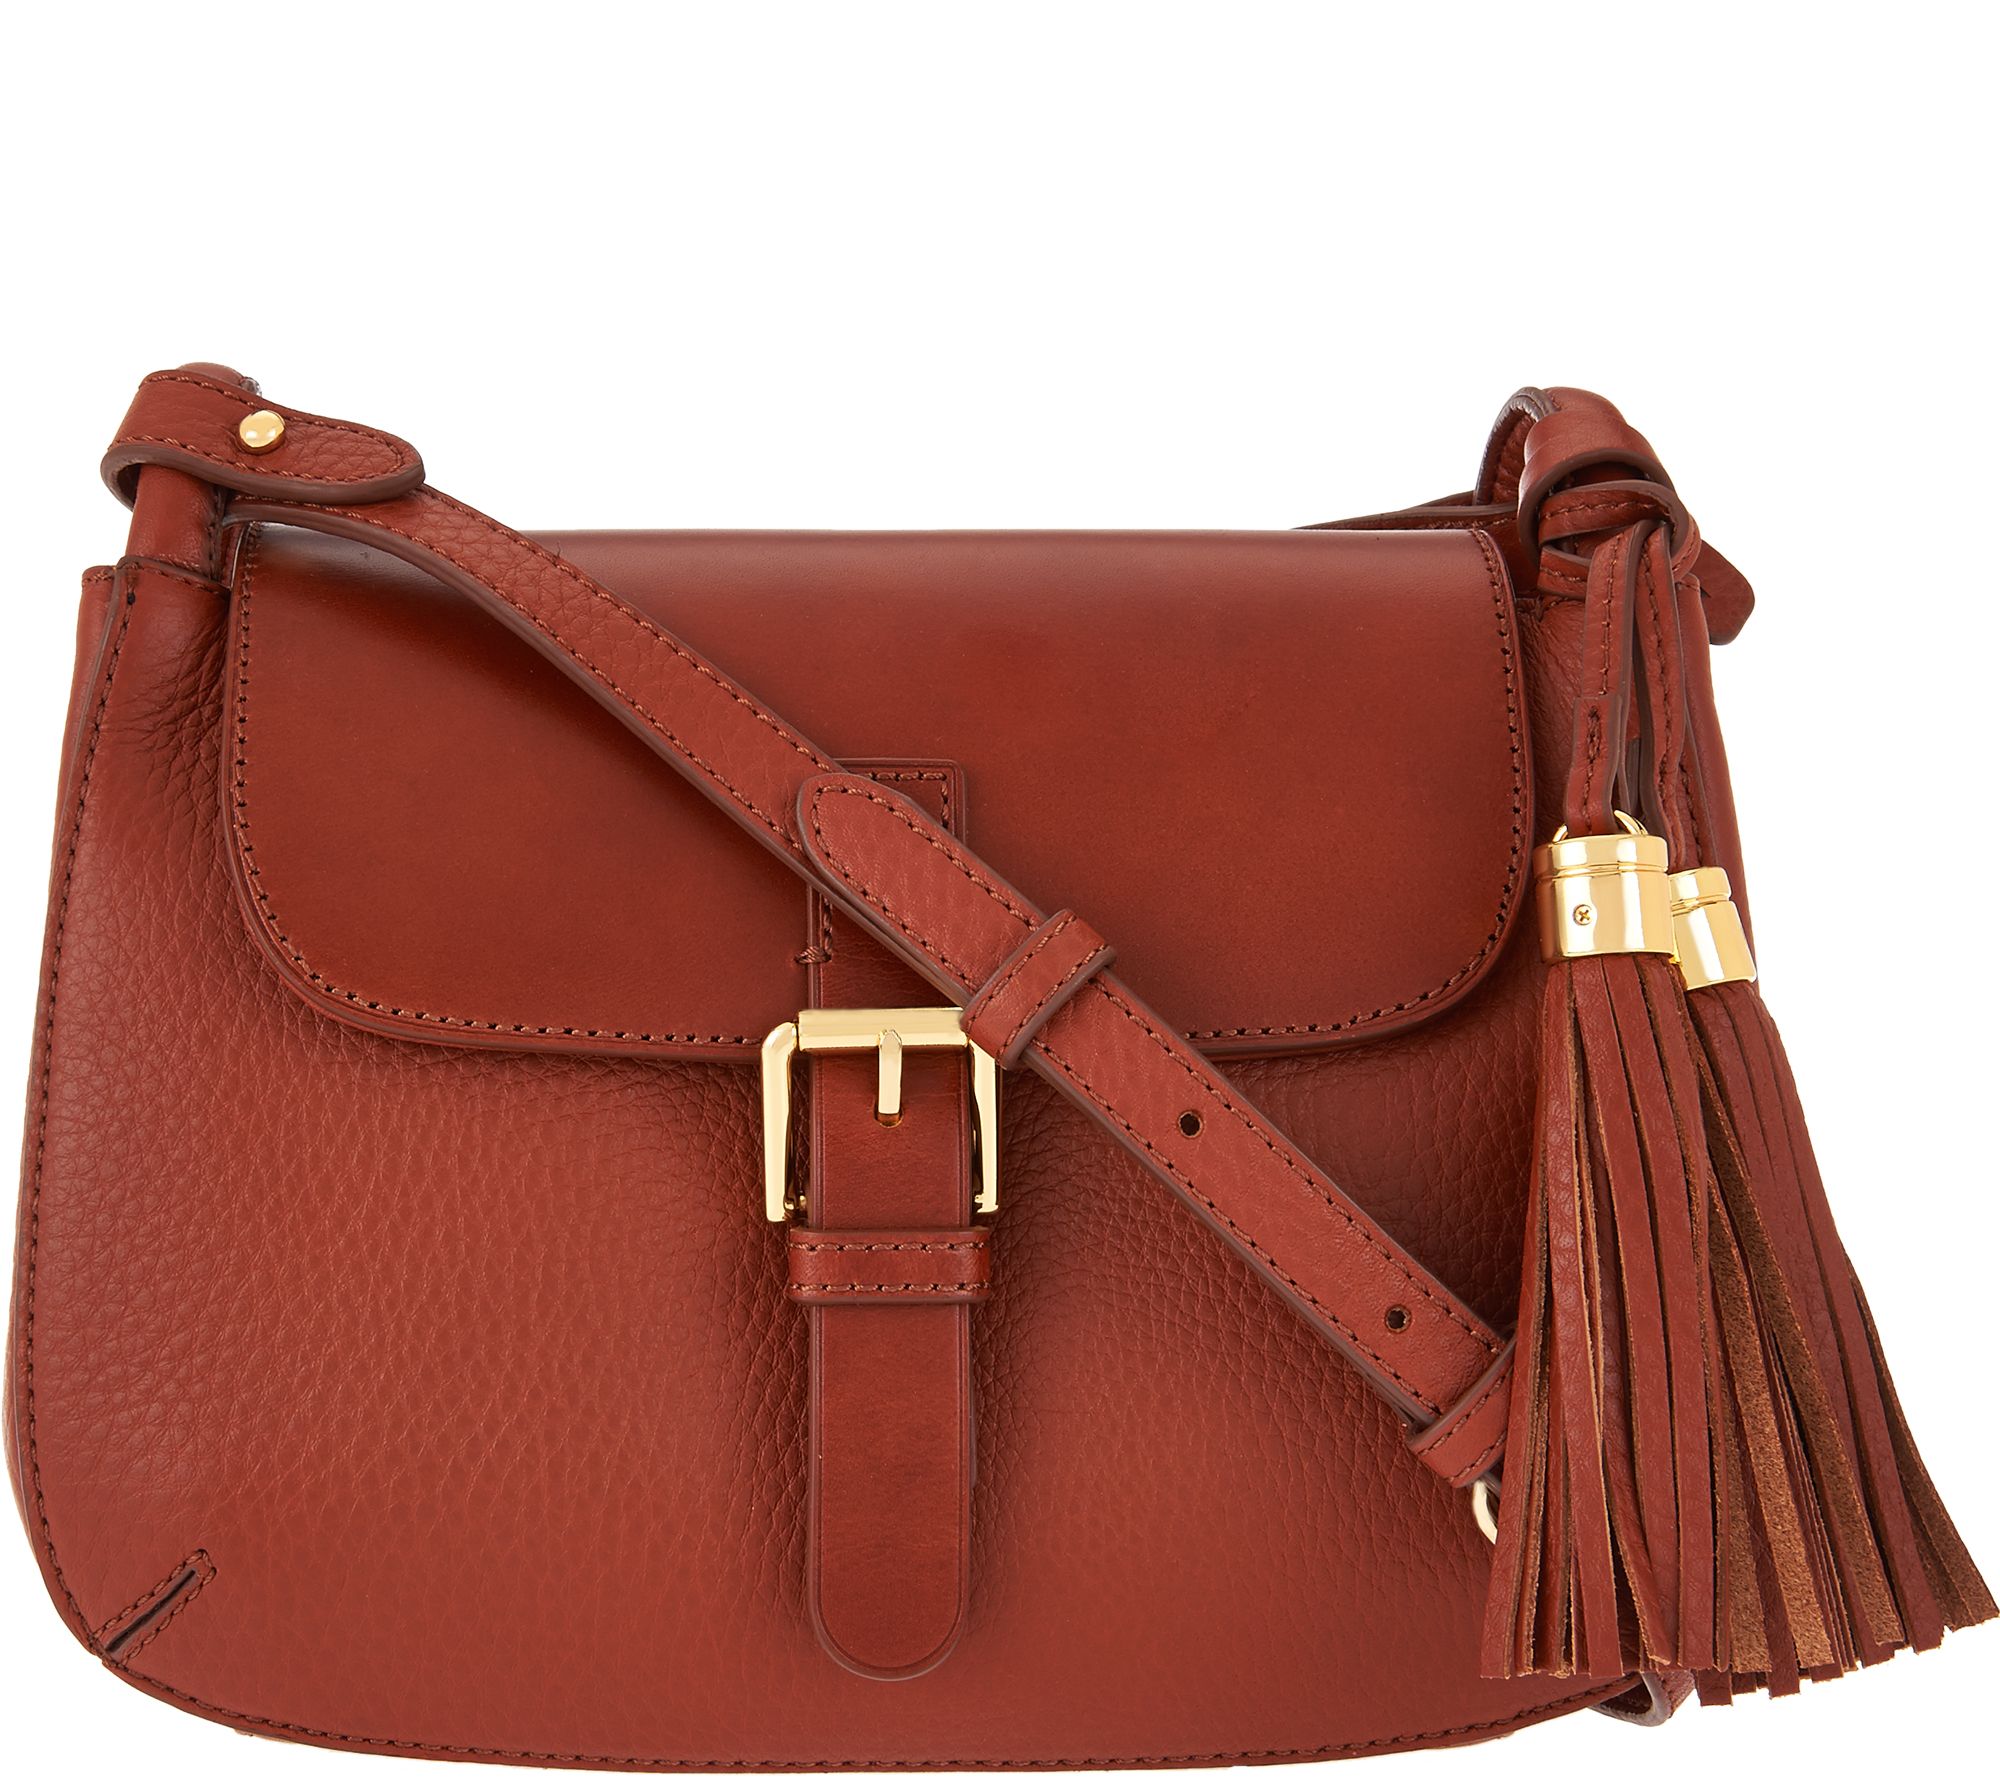 Handbags — Handbags & Luggage — QVC.com